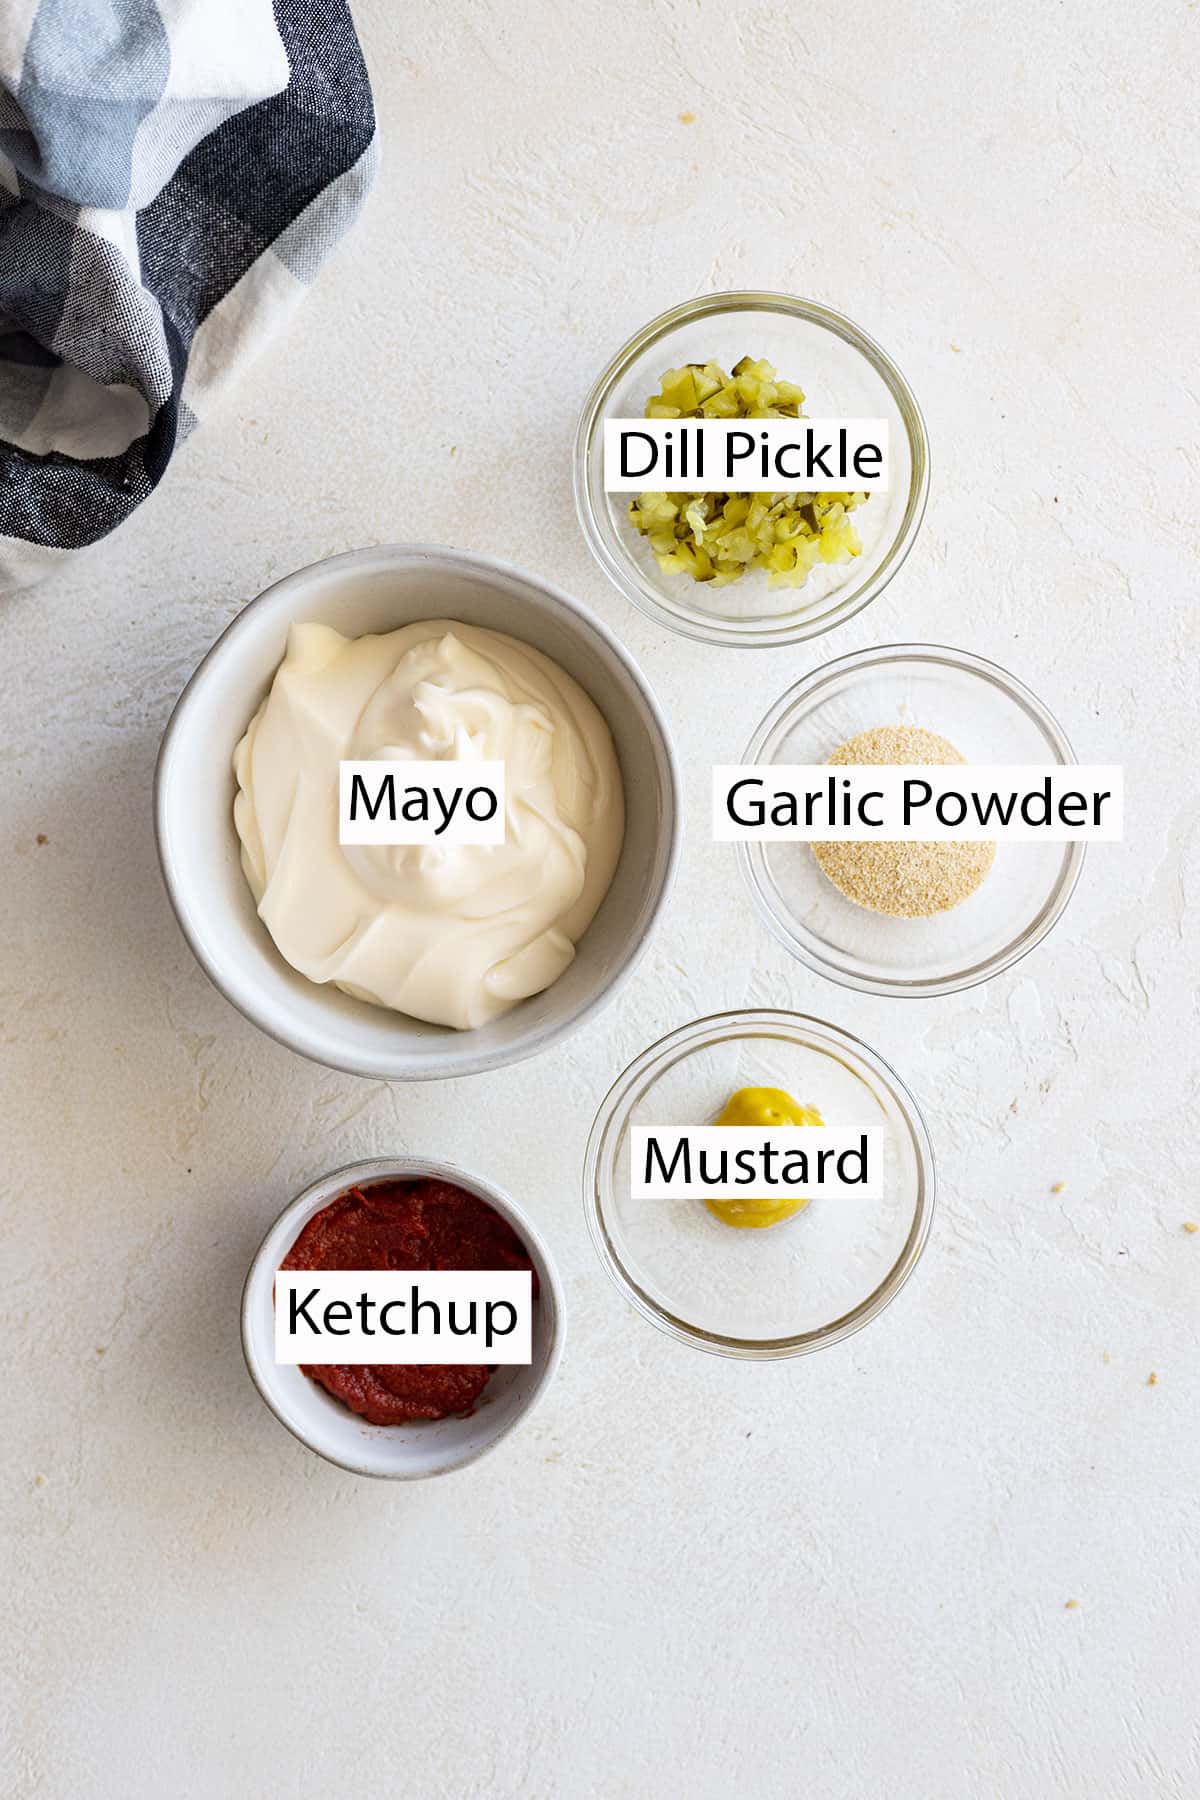 Burger sauce ingredients: mayo, dill pickle, garlic powder, mustard, and ketchup.